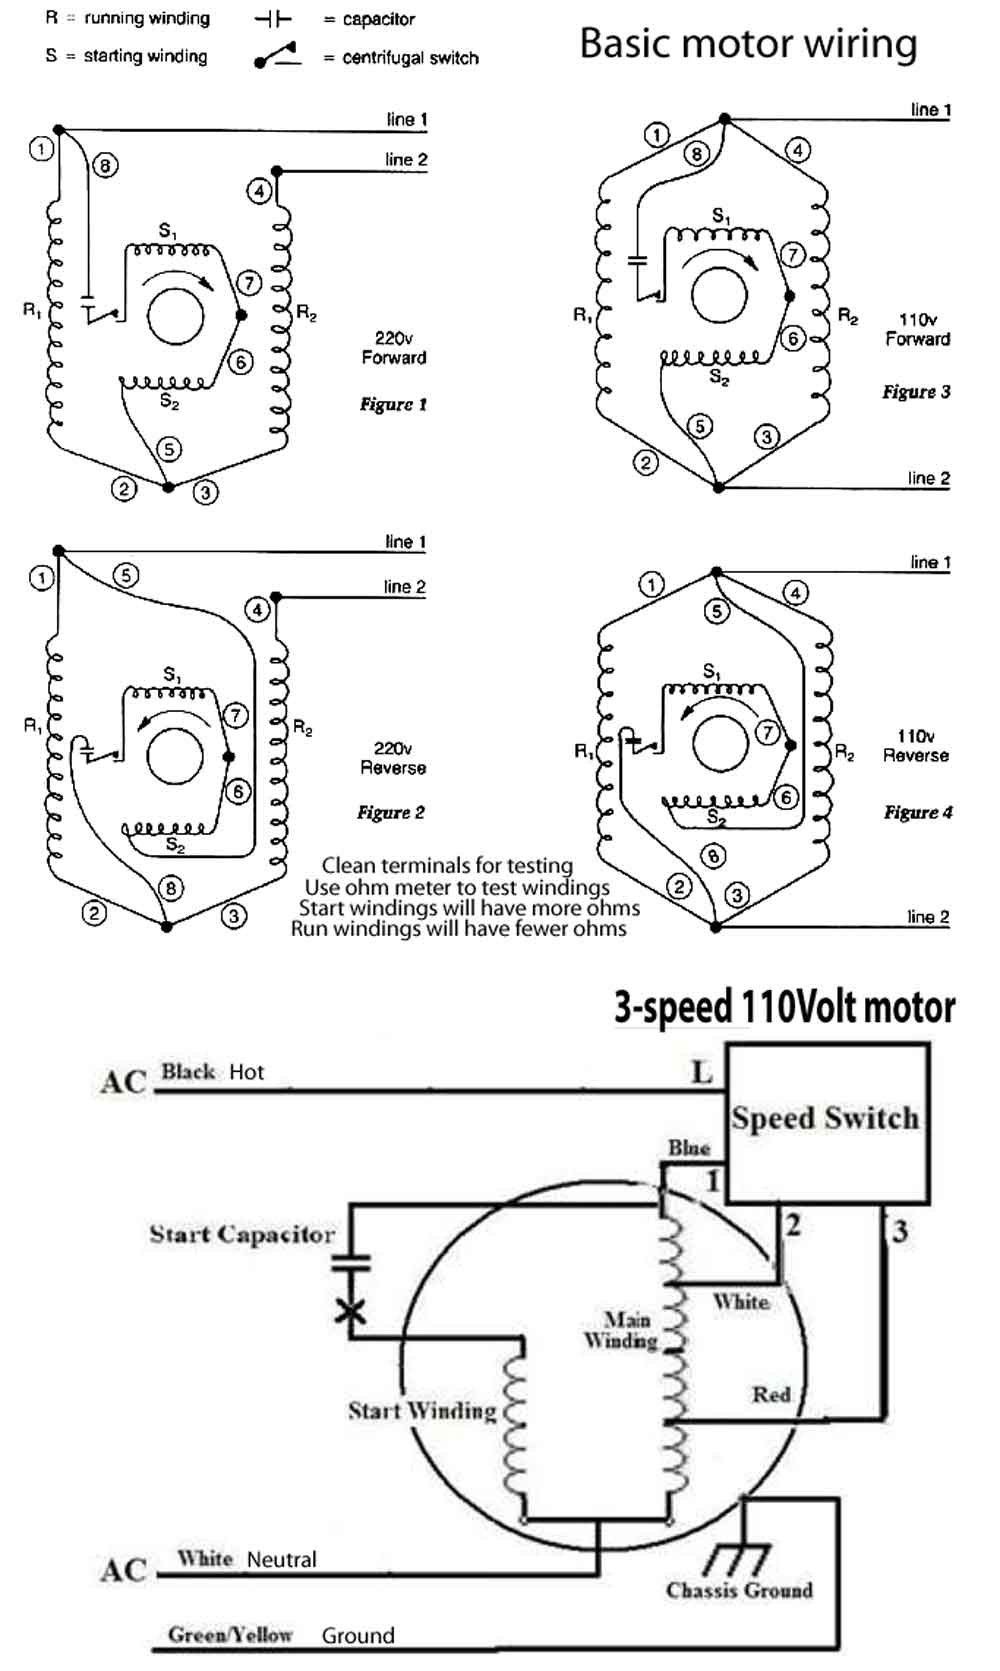 How To Wire 3-Speed Fan Switch - 3 Speed Fan Switch Wiring Diagram